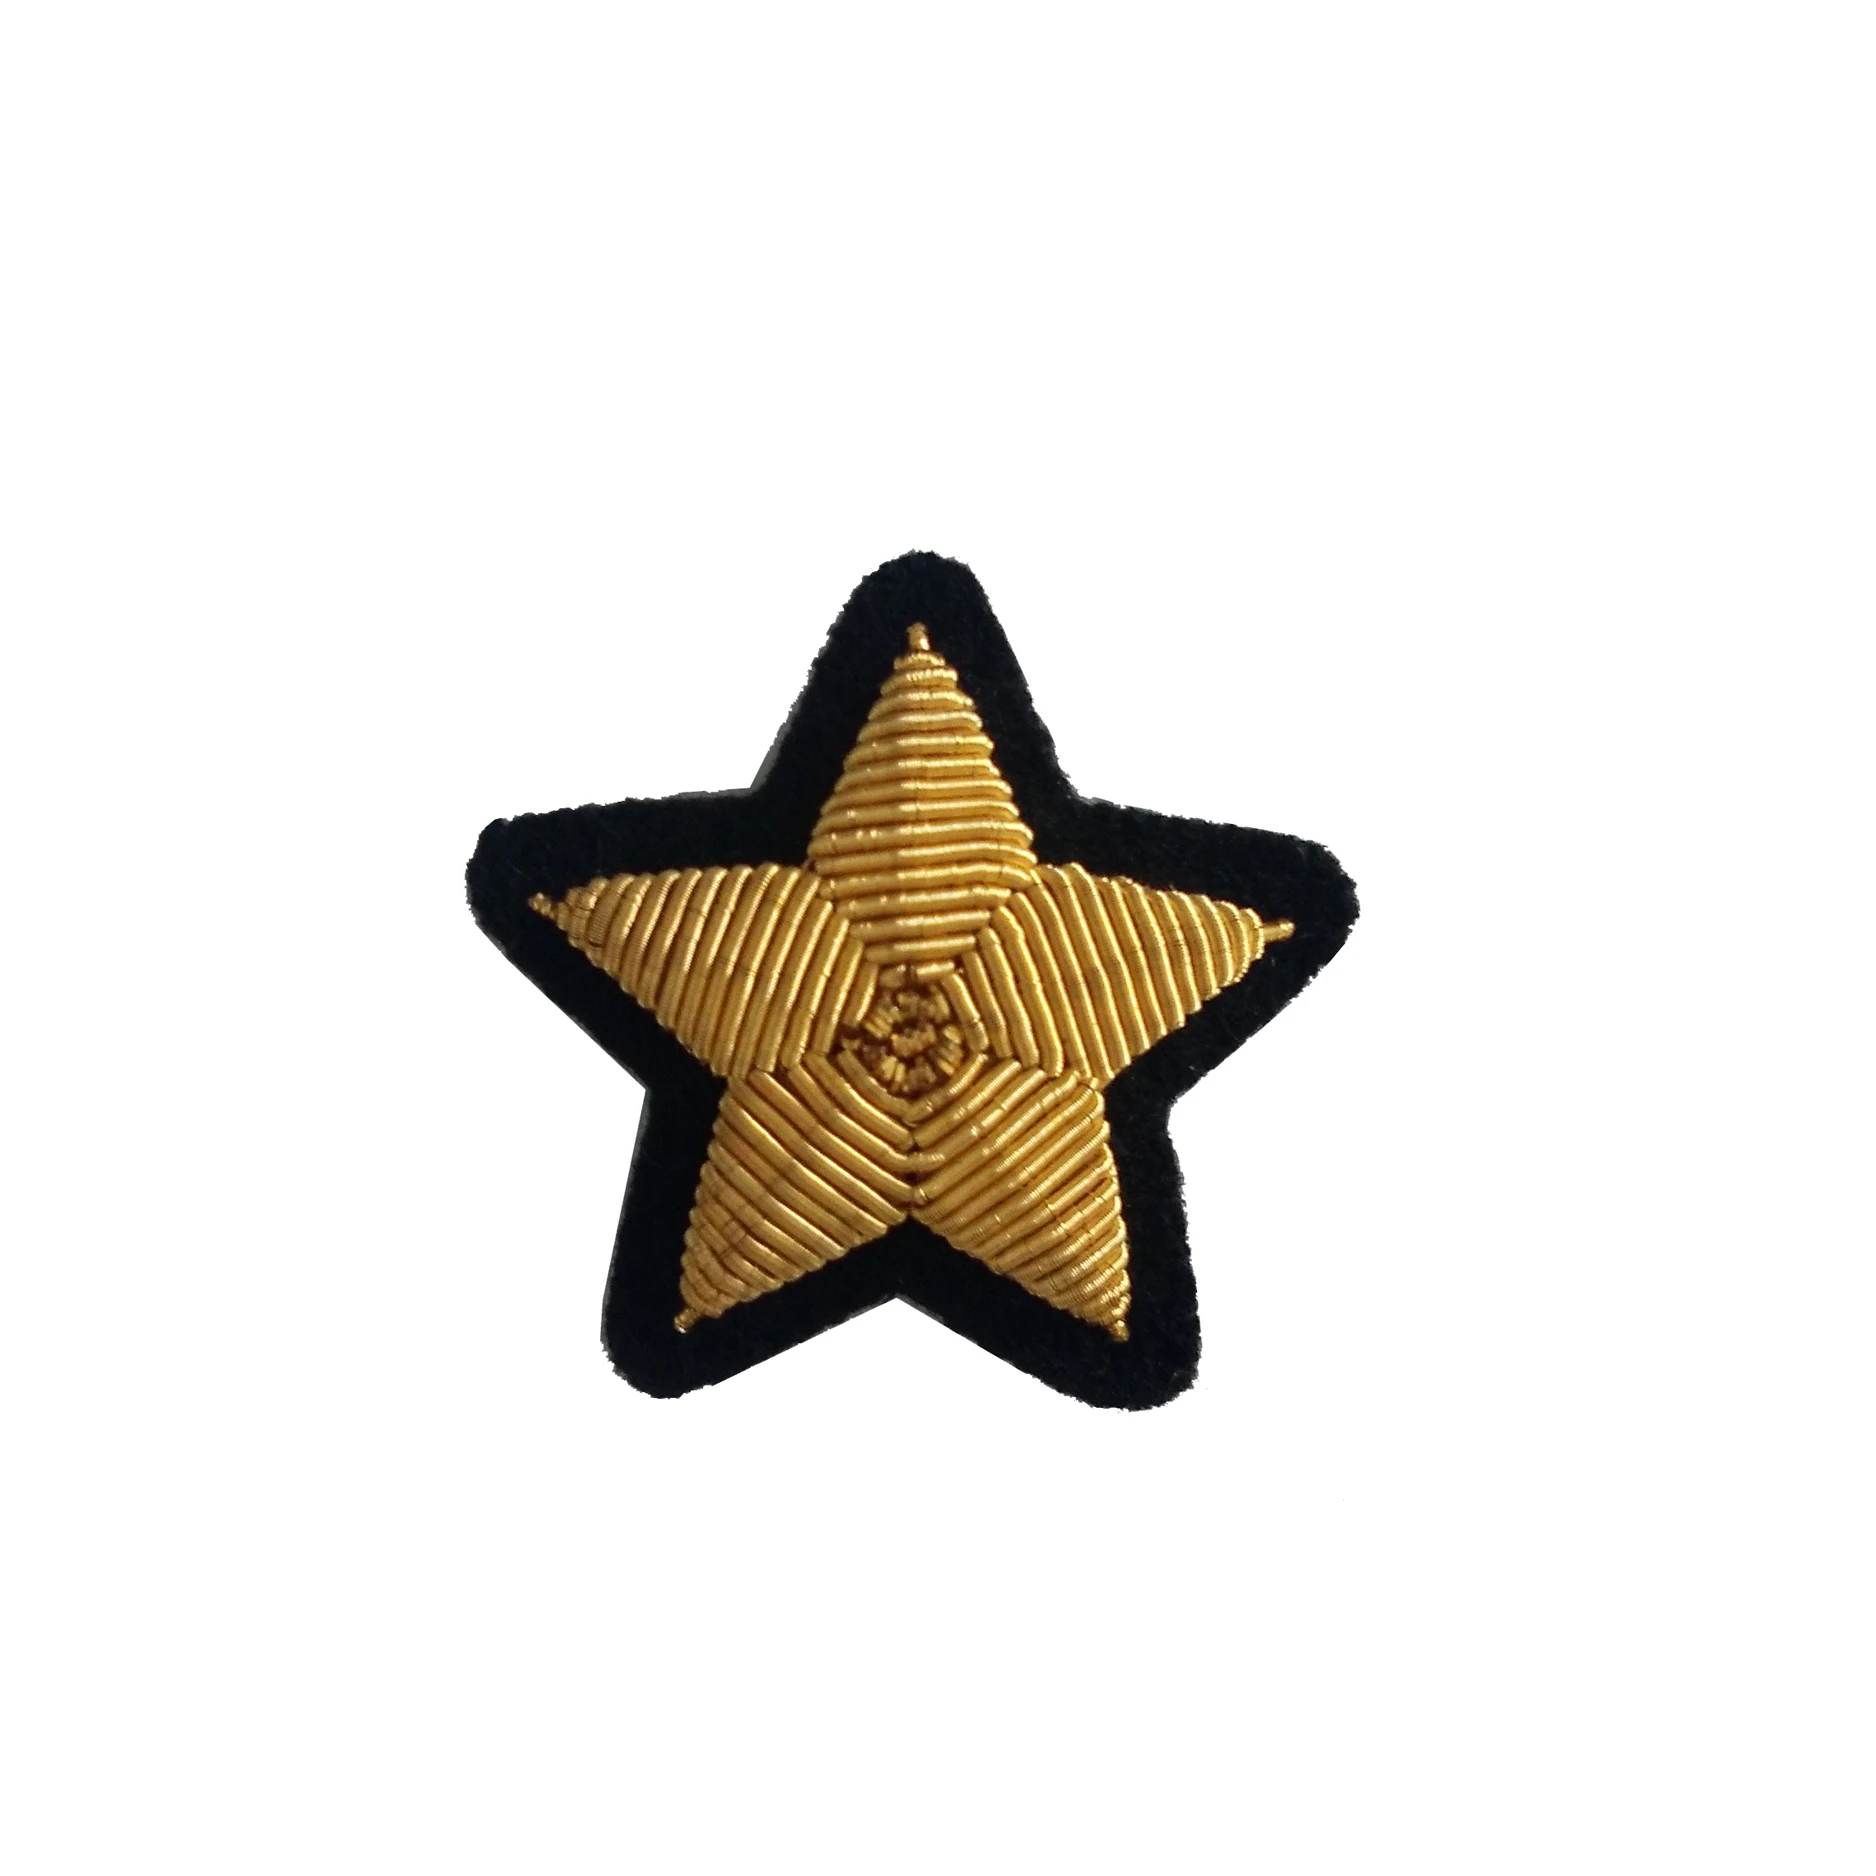 Ручной работы из витой нити, из проволоки/вышивка расшитая золотом эмблема, золотой значок звезды